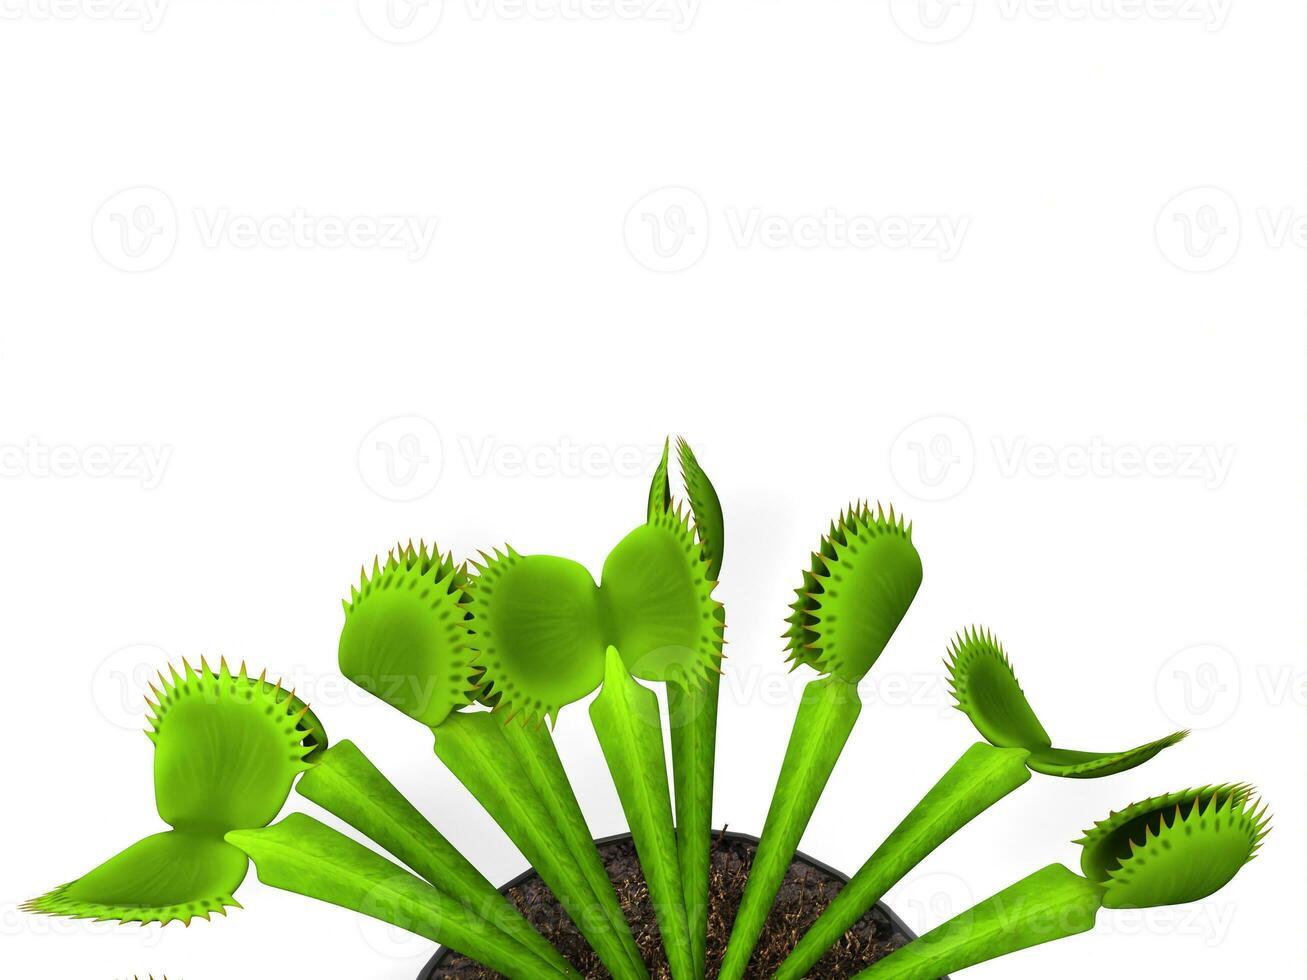 Green venus flytrap plant - closeup shot photo